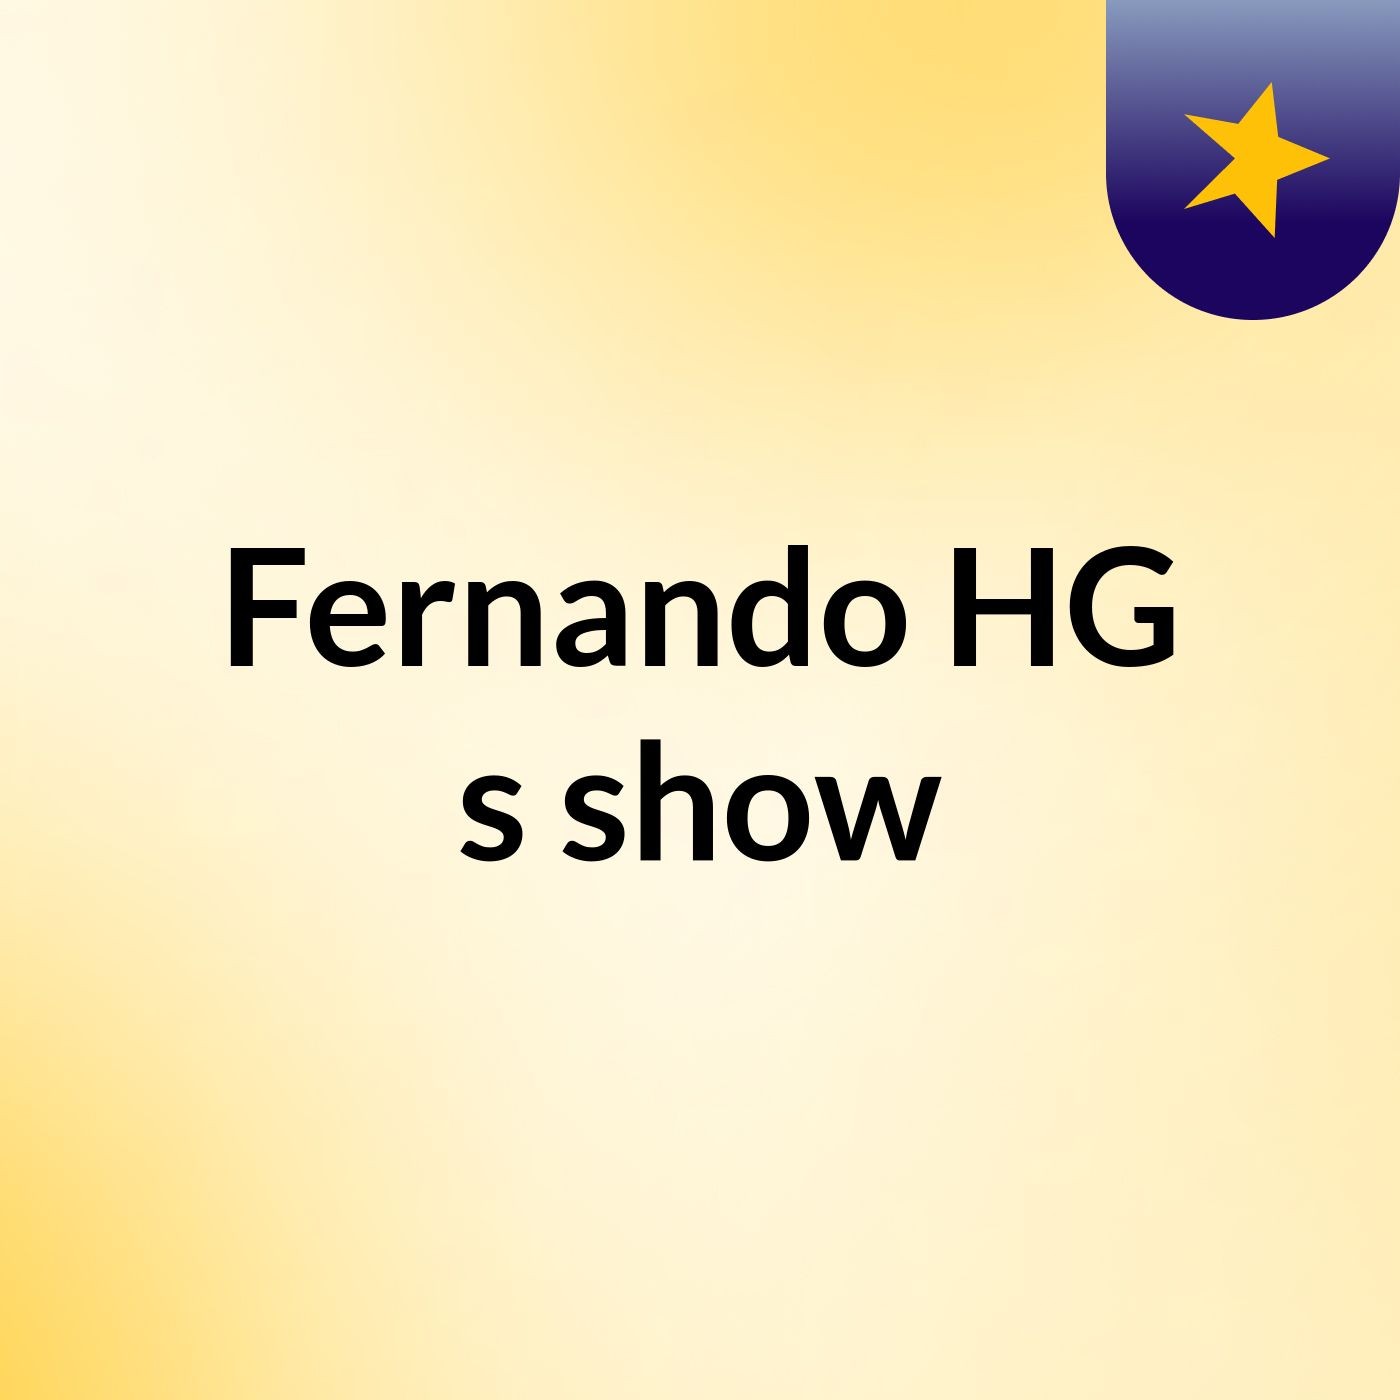 Fernando HG's show